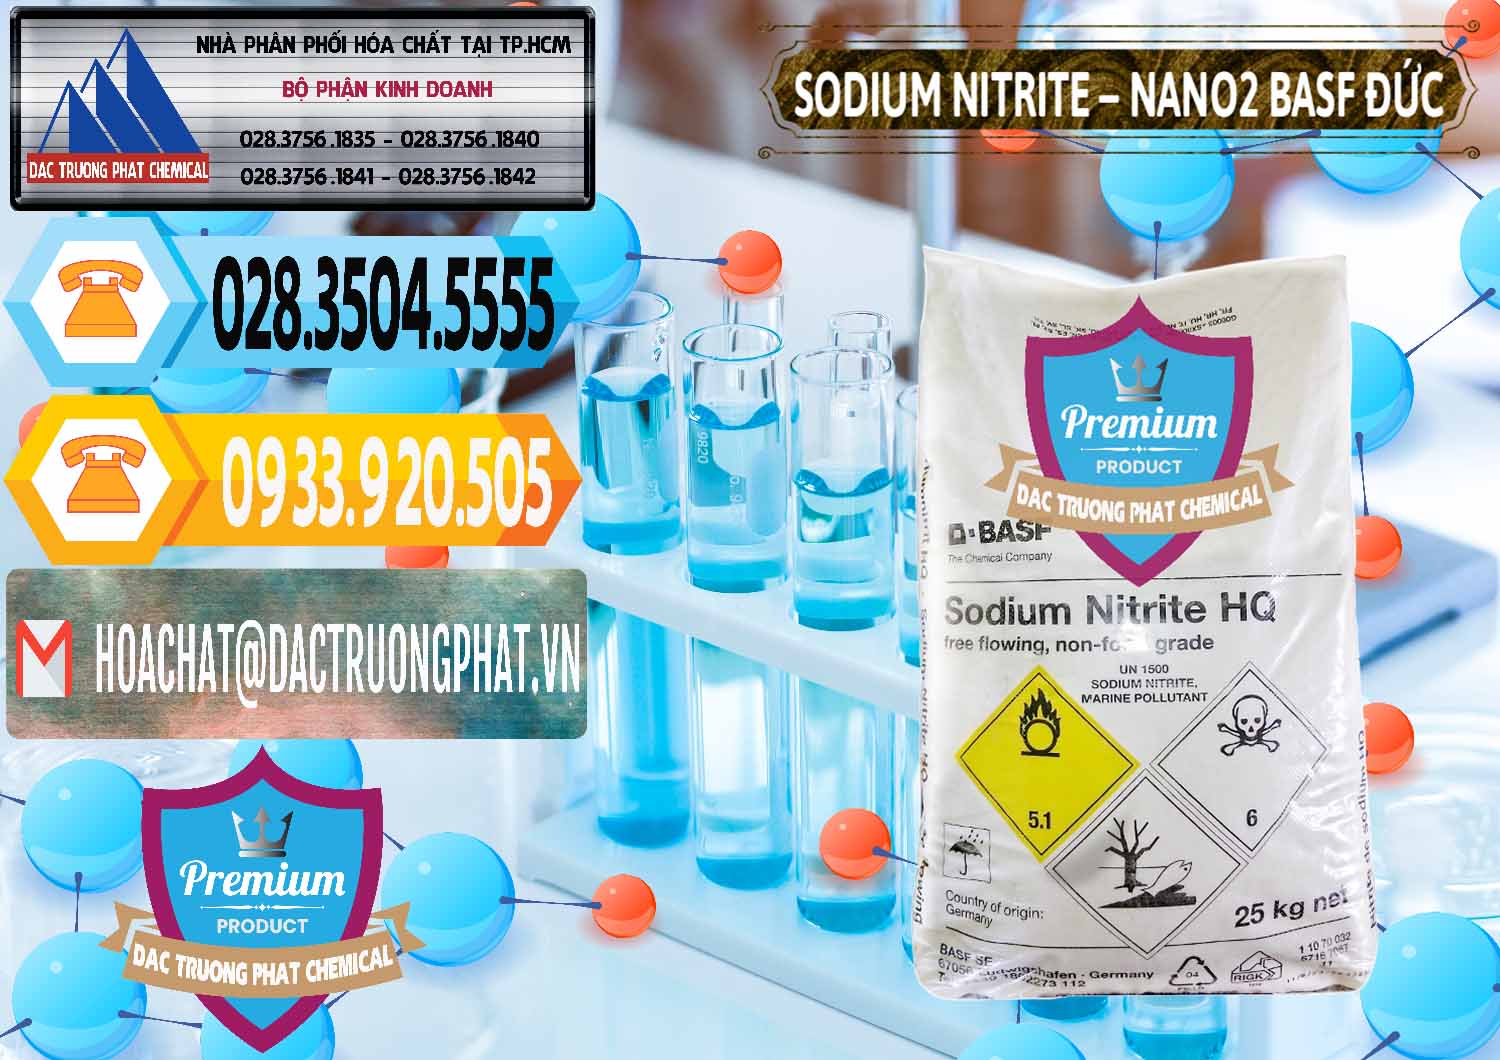 Chuyên bán _ cung ứng Sodium Nitrite - NANO2 Đức BASF Germany - 0148 - Nơi bán và cung cấp hóa chất tại TP.HCM - hoachattayrua.net